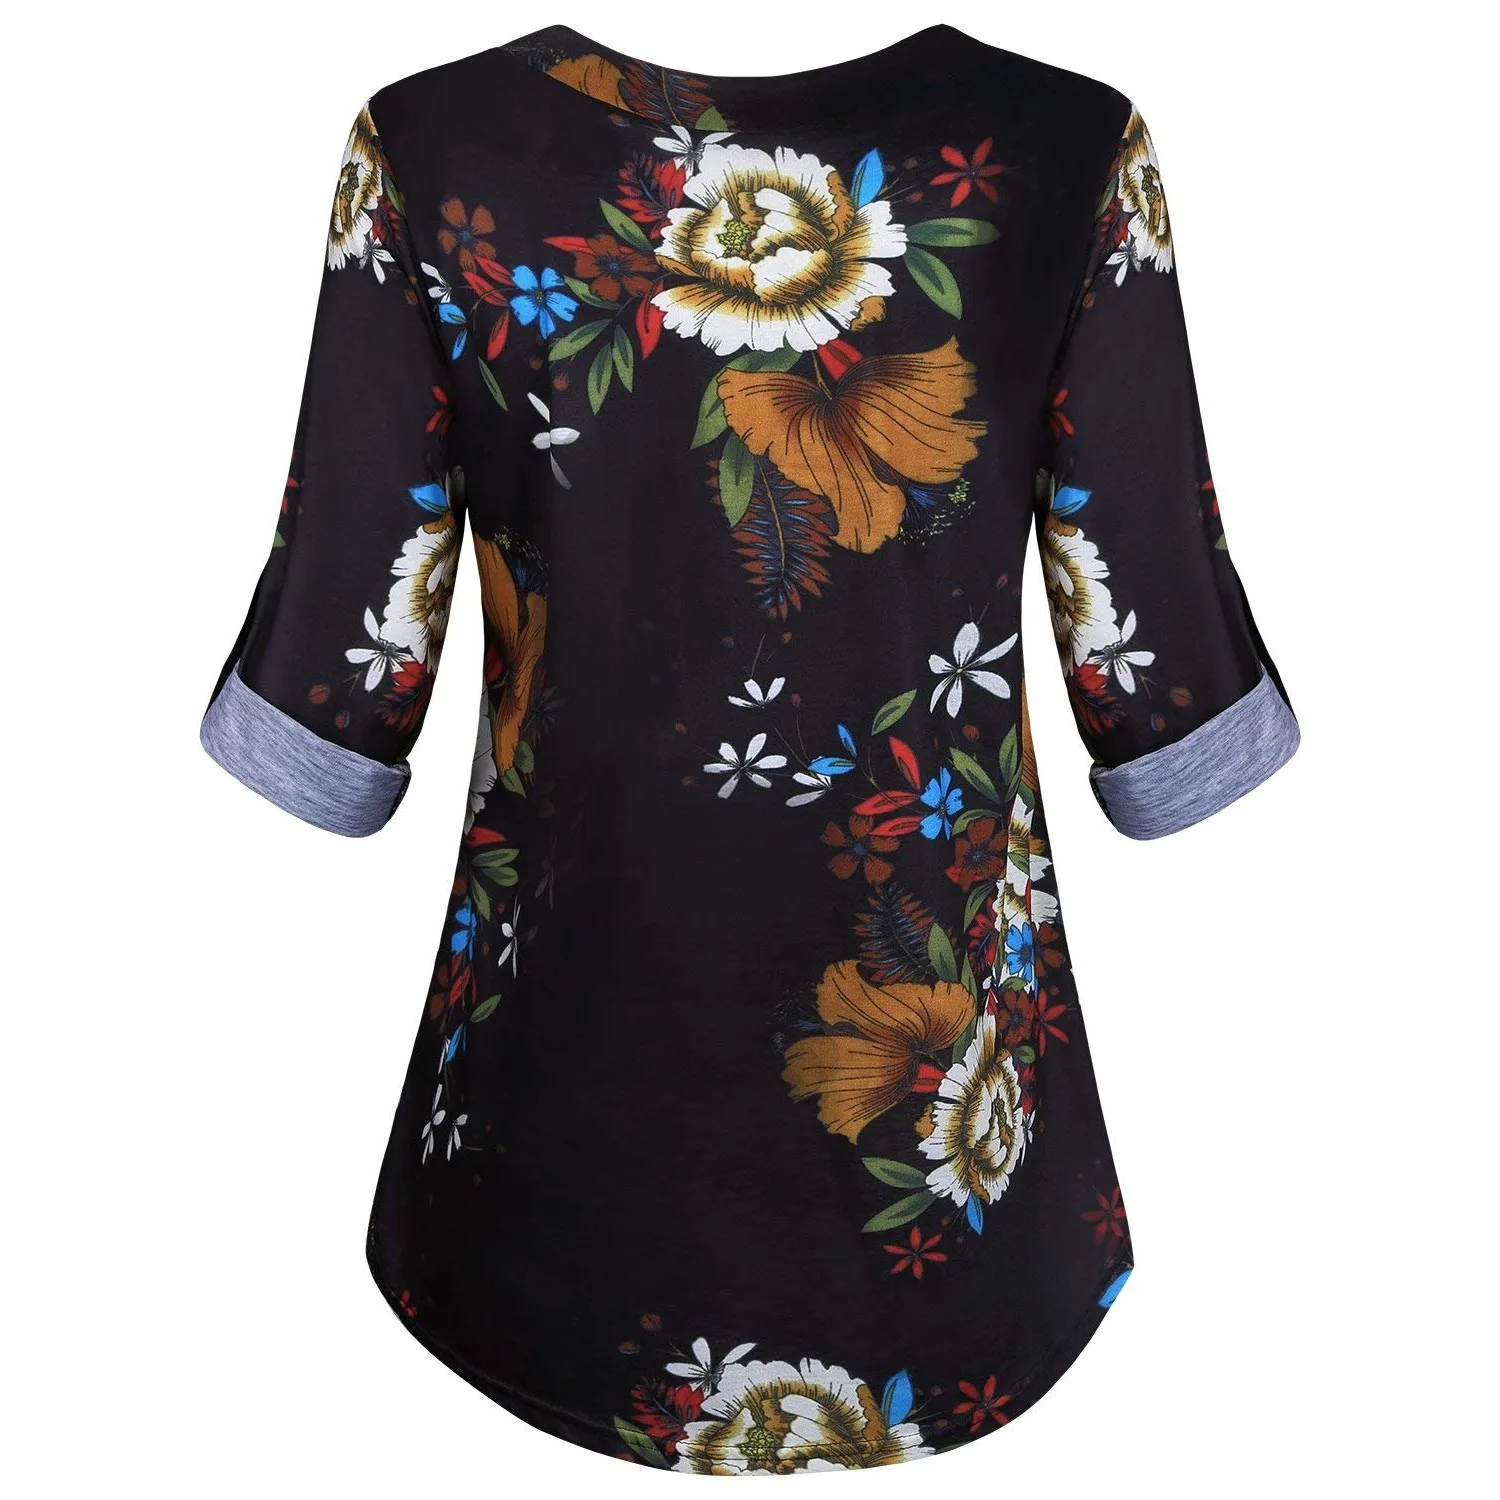 5XL размера плюс, Женская туника, рубашка, осень, длинный рукав, цветочный принт, v-образный вырез, блузки и топы с пуговицами, большой размер, женская одежда